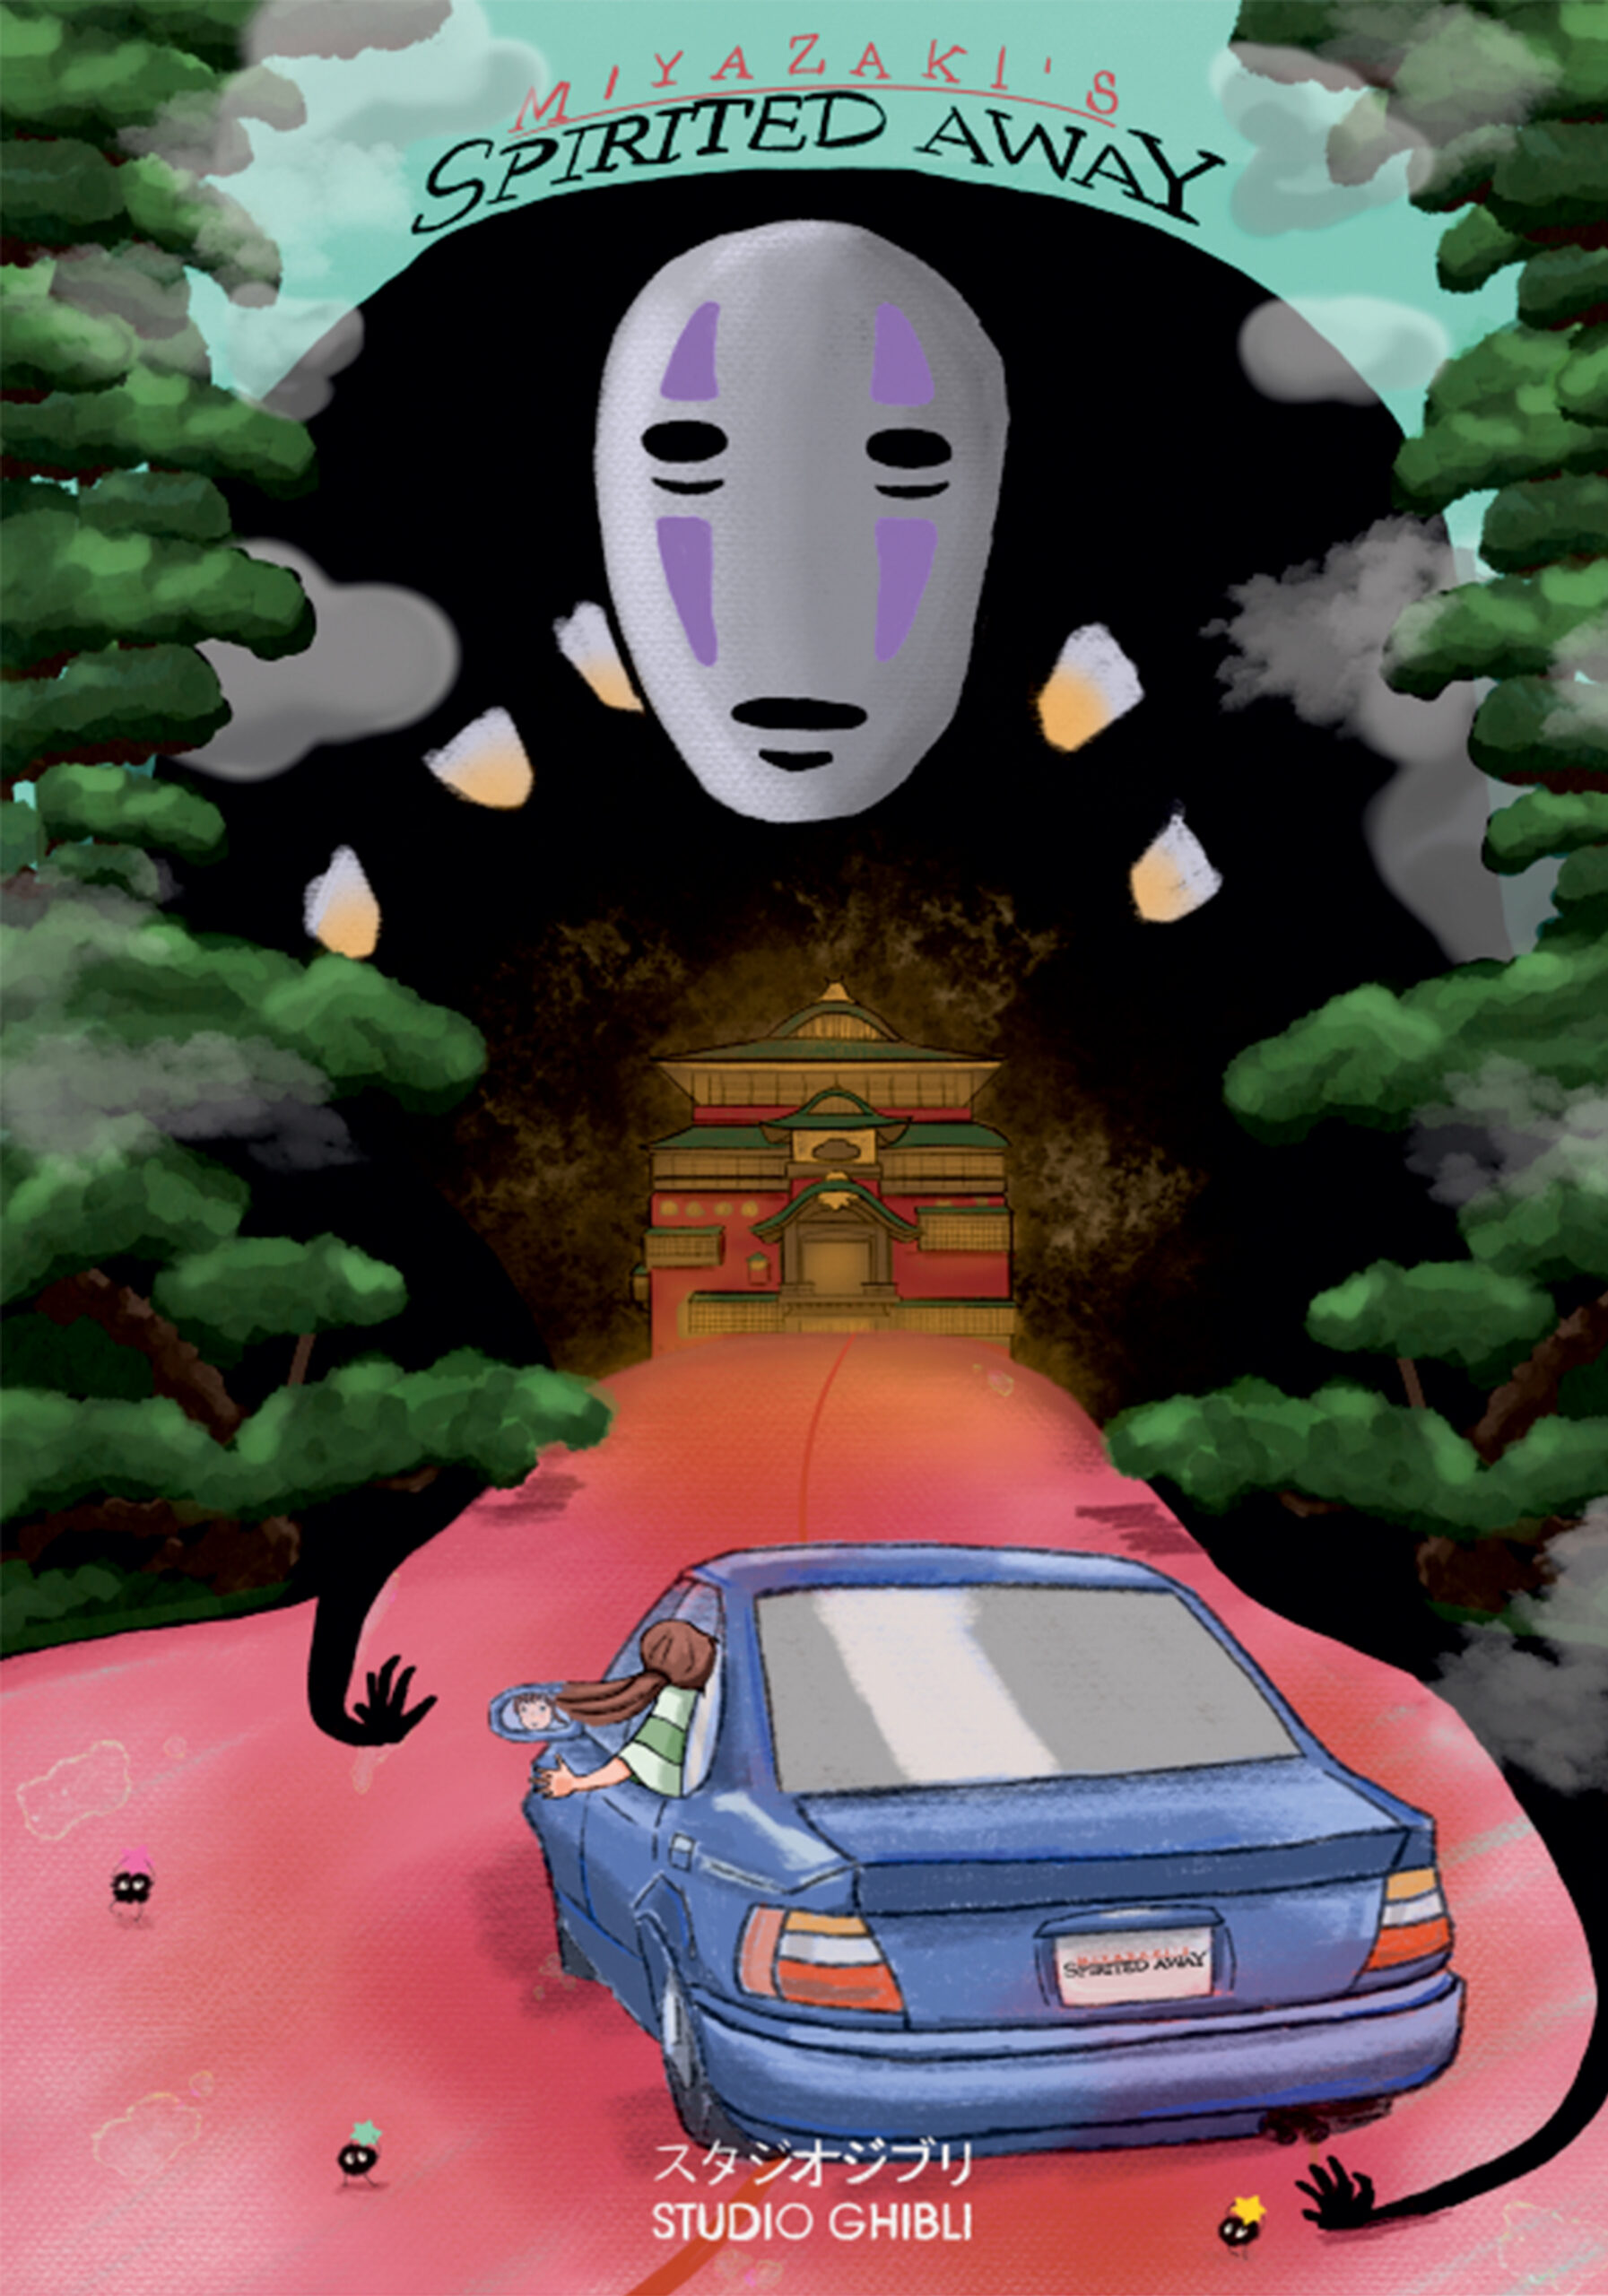 Plakat do filmu między innymi z niebieskim autem, językiem i drzewami po obu stronach w górnej części grafiki. 